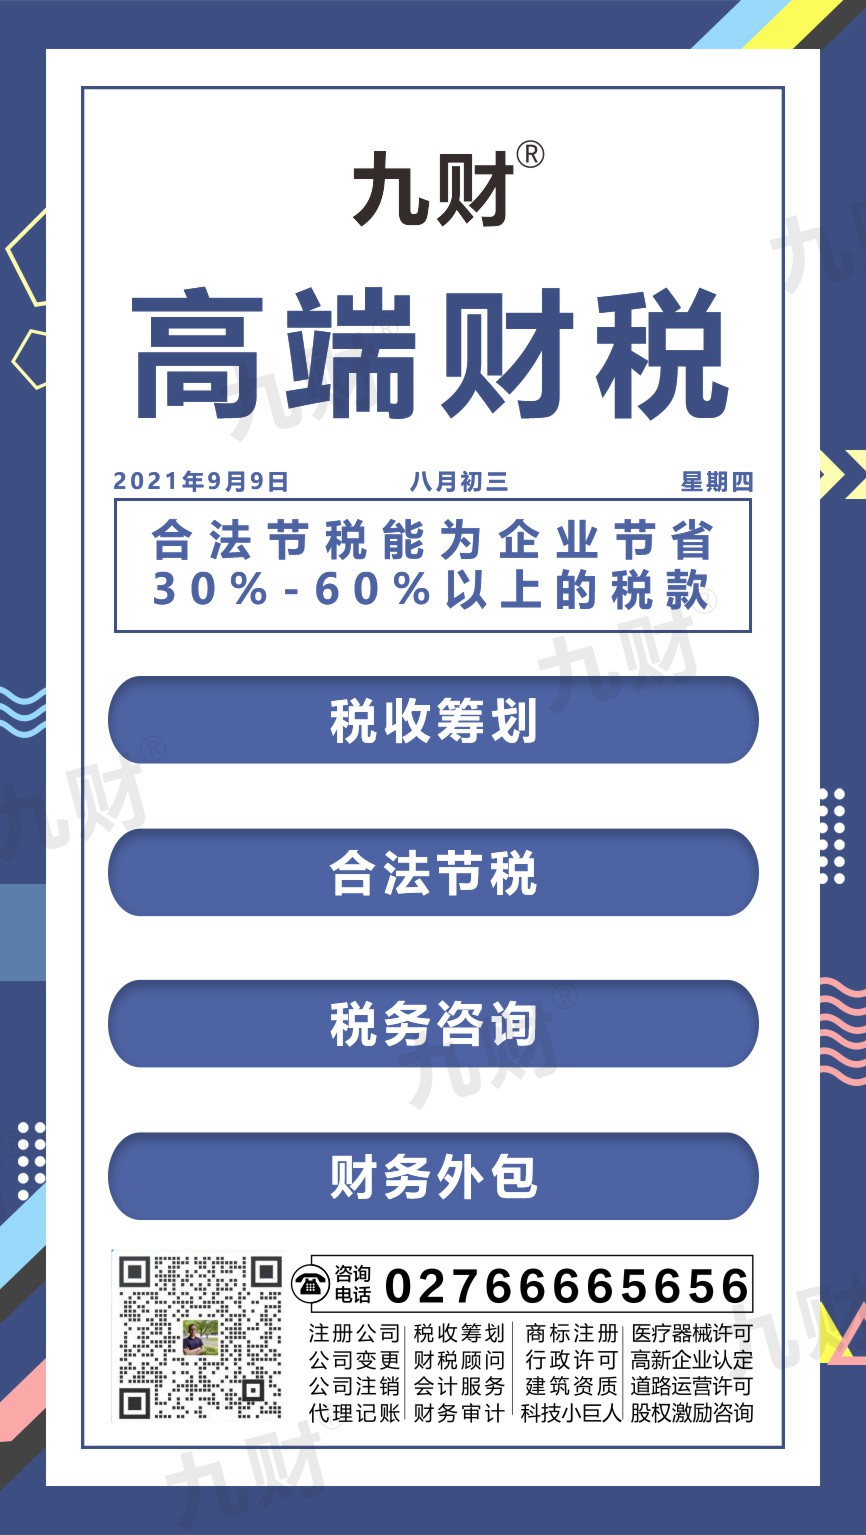 汉阳区武汉东湖区股东变更网上如何填写资料申请